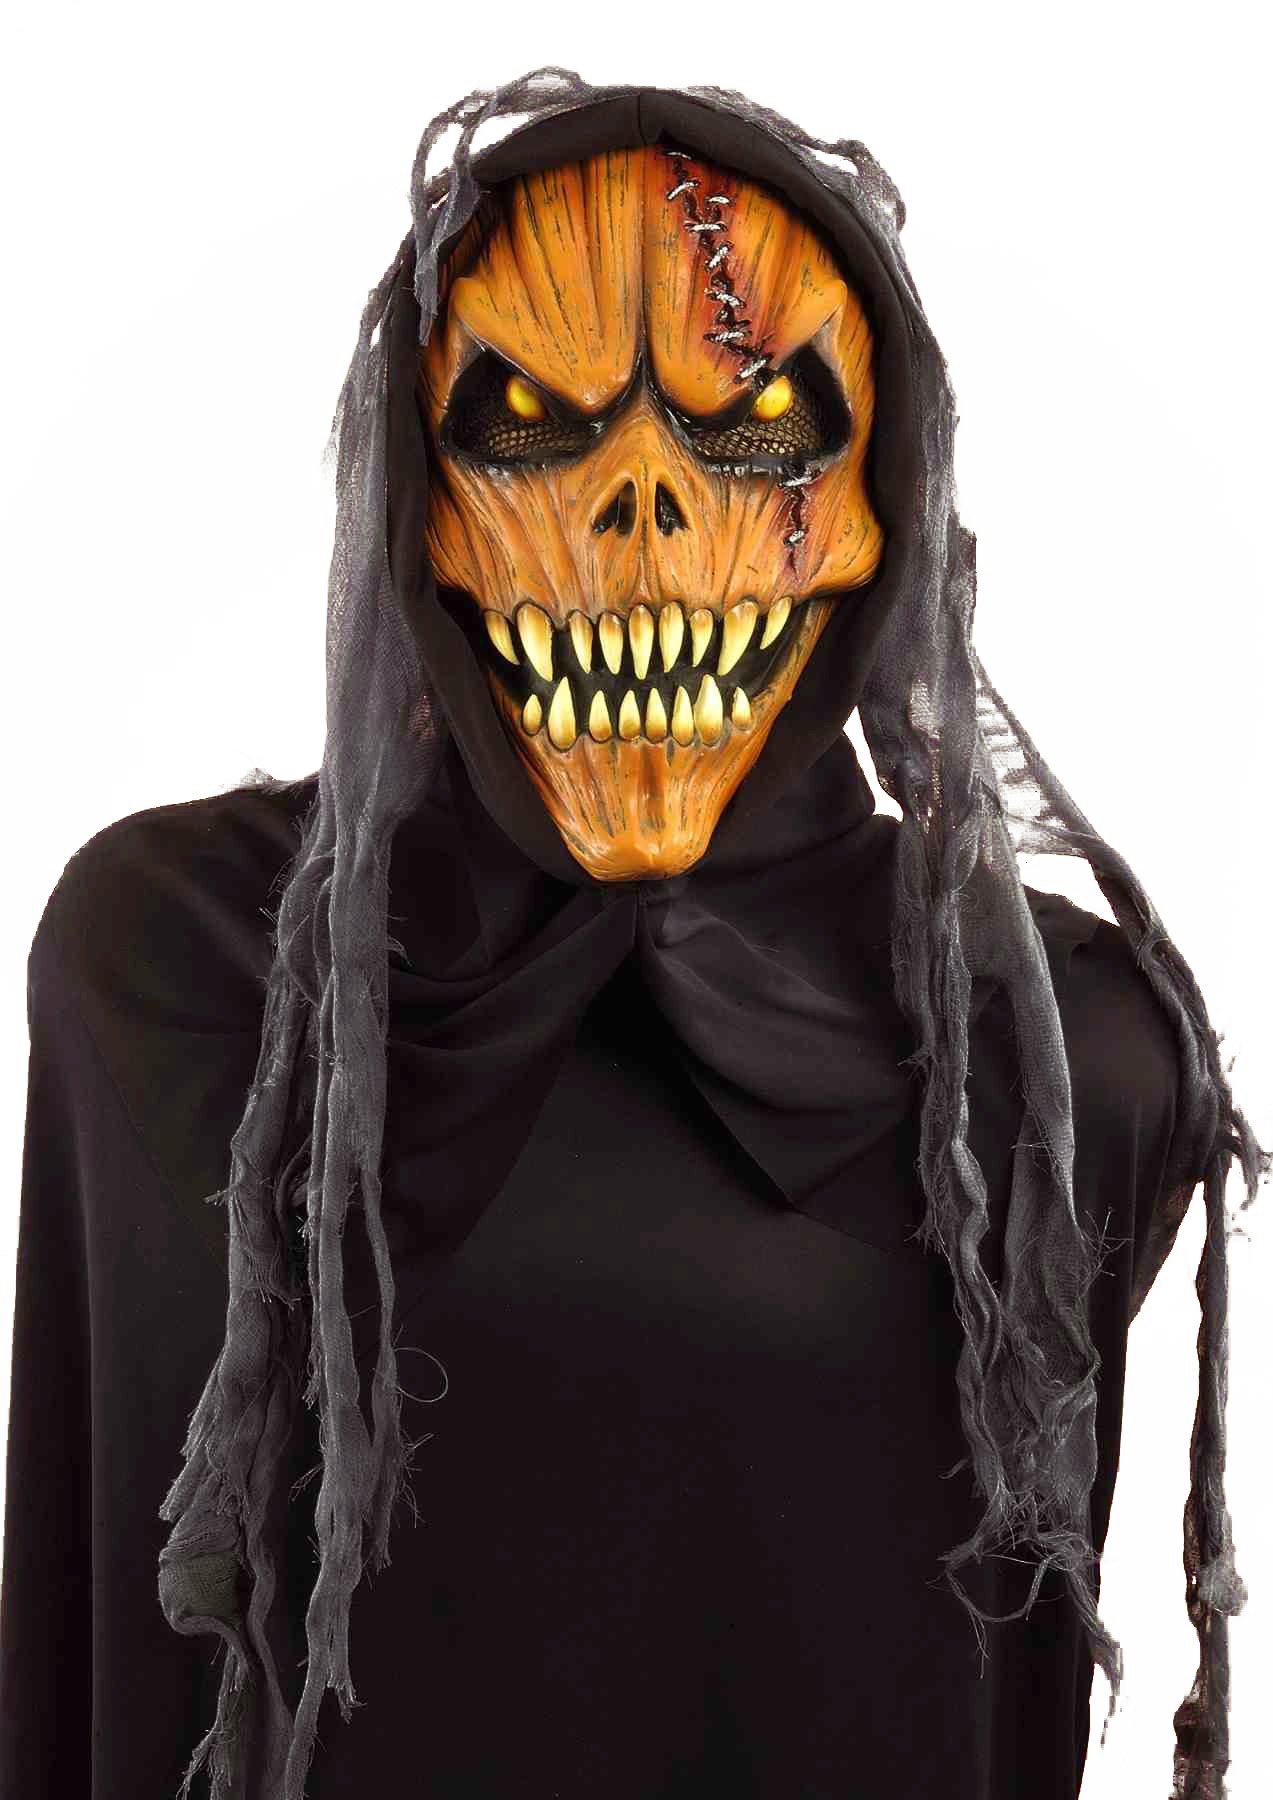 Костюм скелета своими руками на хэллоуин, на новый год, выкройки, фото - мой карнавал